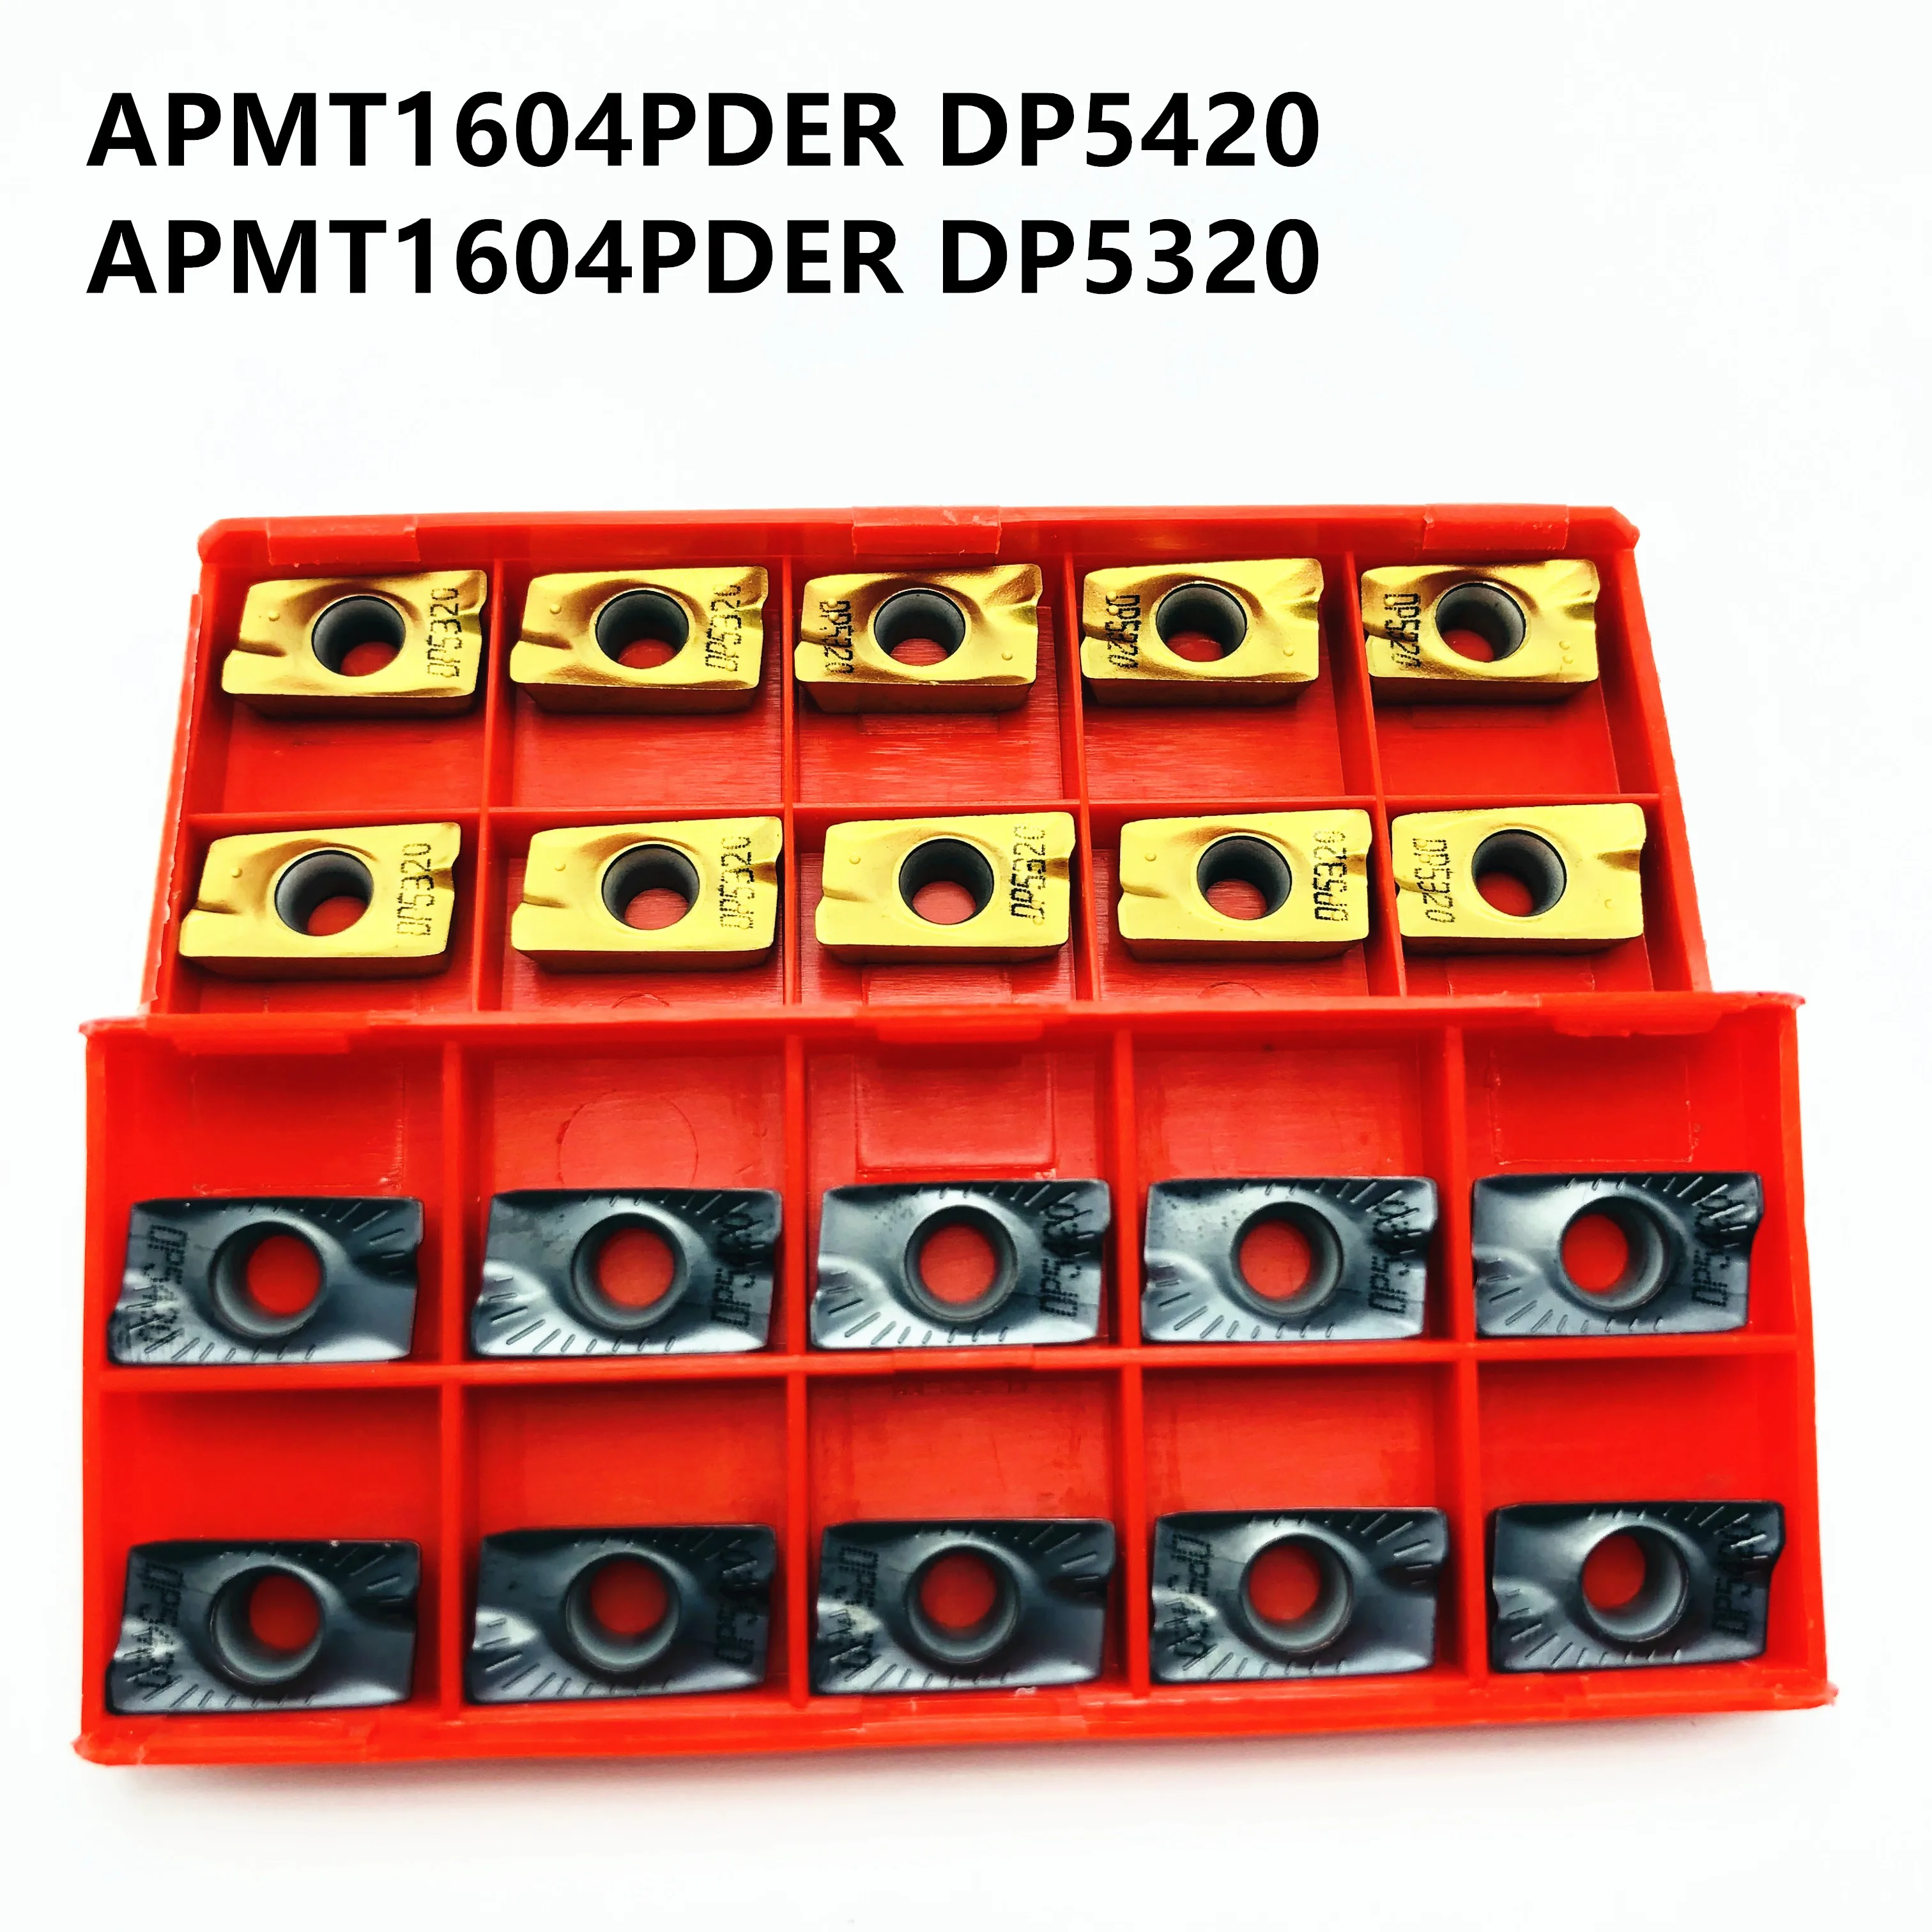 APMT1604 APMT1135 PDER DP5420 DP5320 твердосплавная вставка токарный станок с ЧПУ инструмент APMT1604 APMT1135 станок аксессуары фрезерный нож